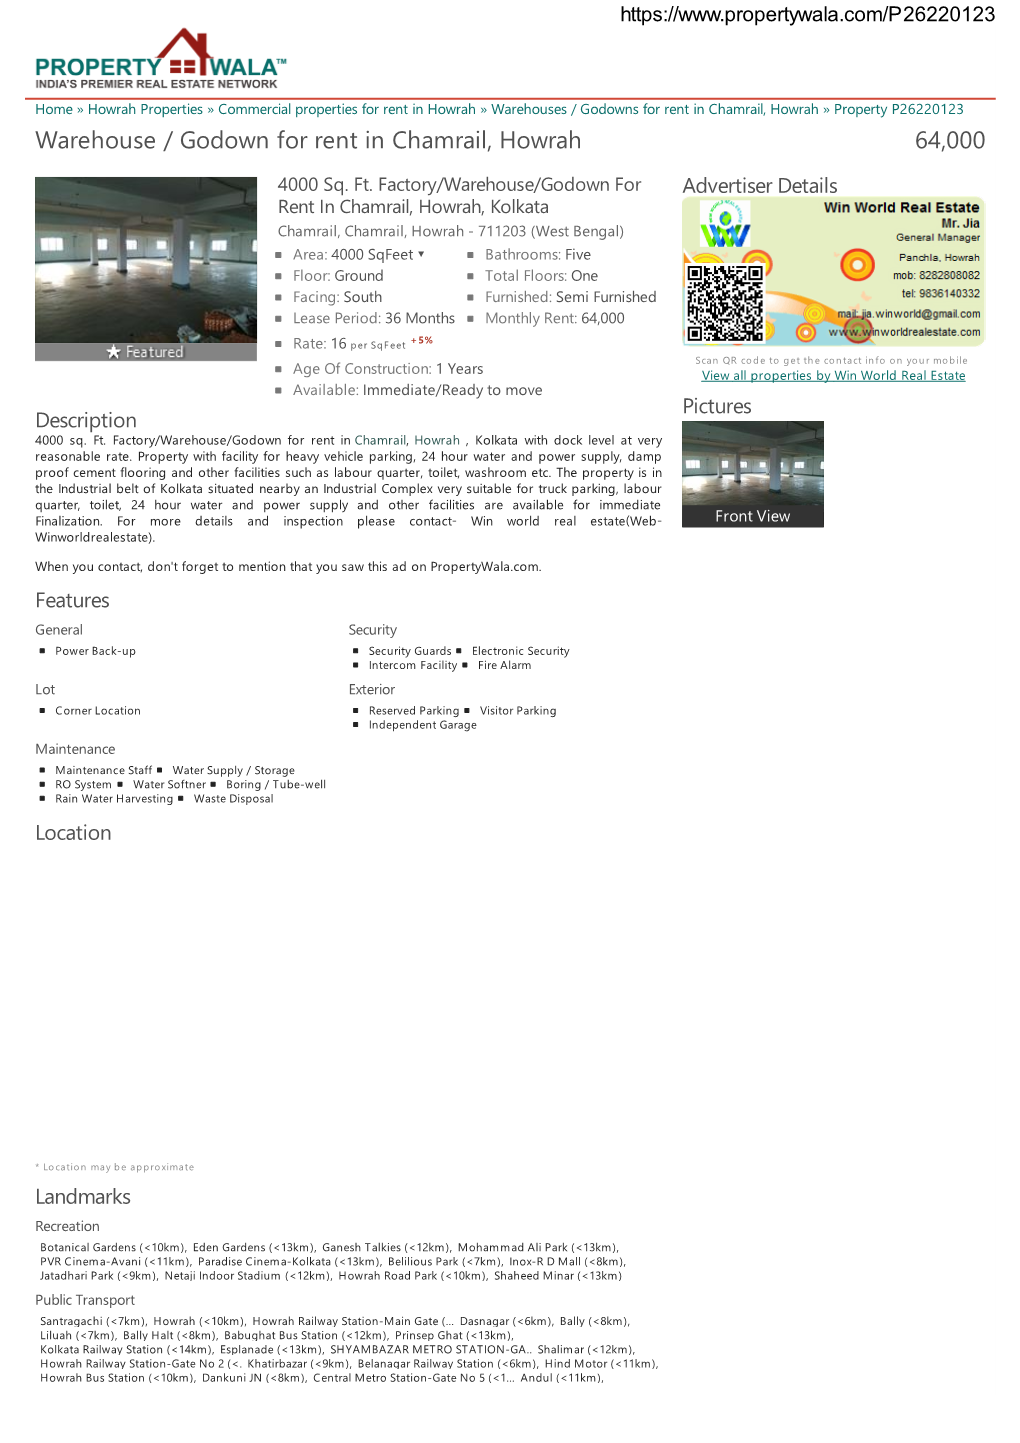 Warehouse / Godown for Rent in Chamrail, Howrah (P26220123